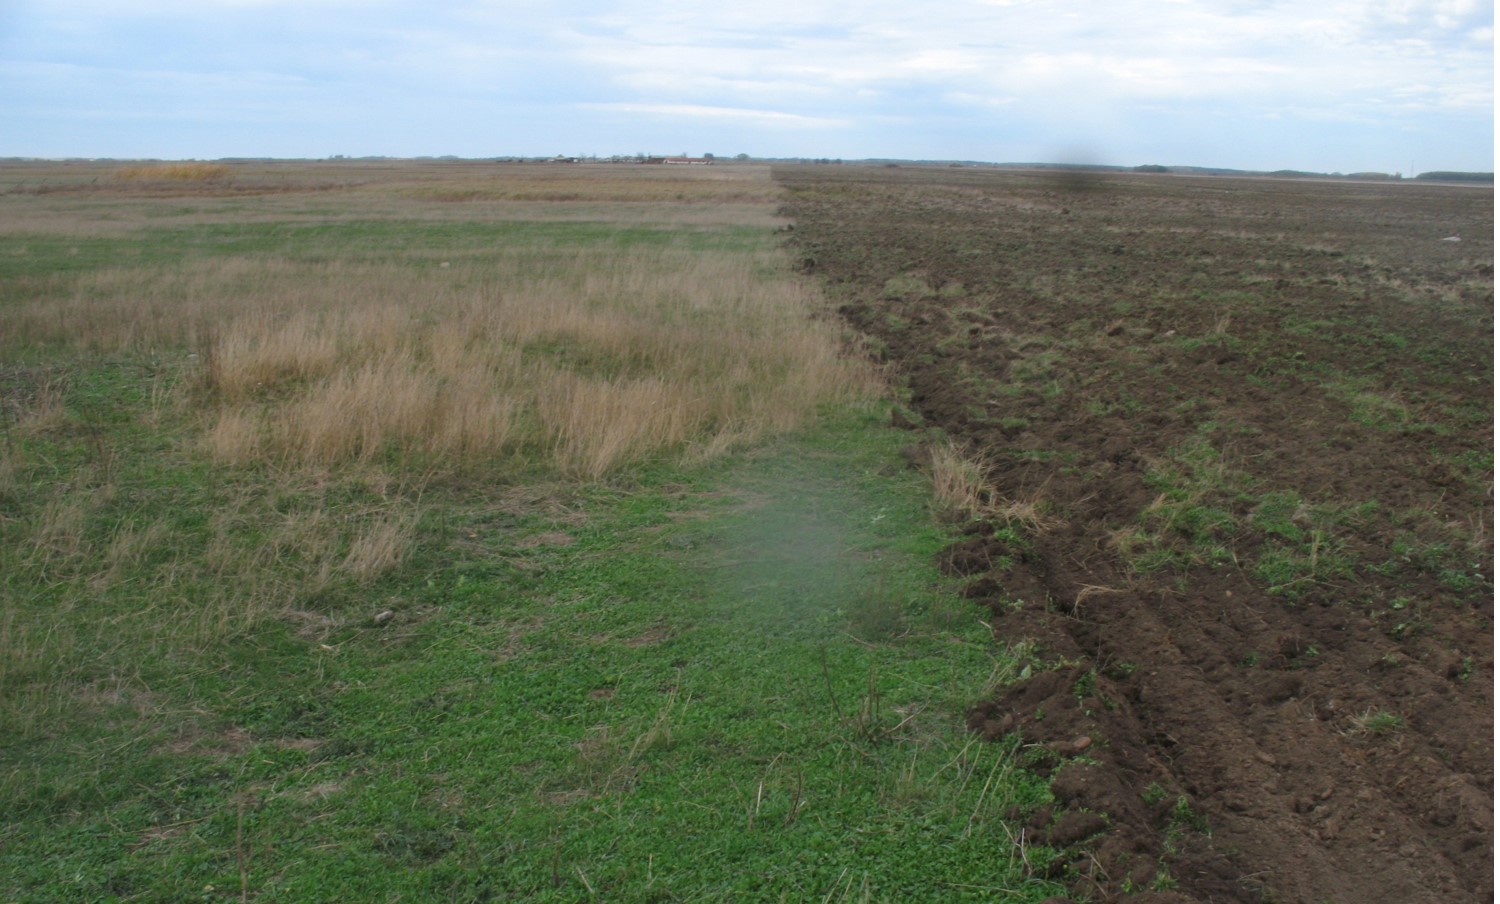 Pajiște transformată în teren agricol,  exemplu de degradare a habitatului. Grupul Milvus